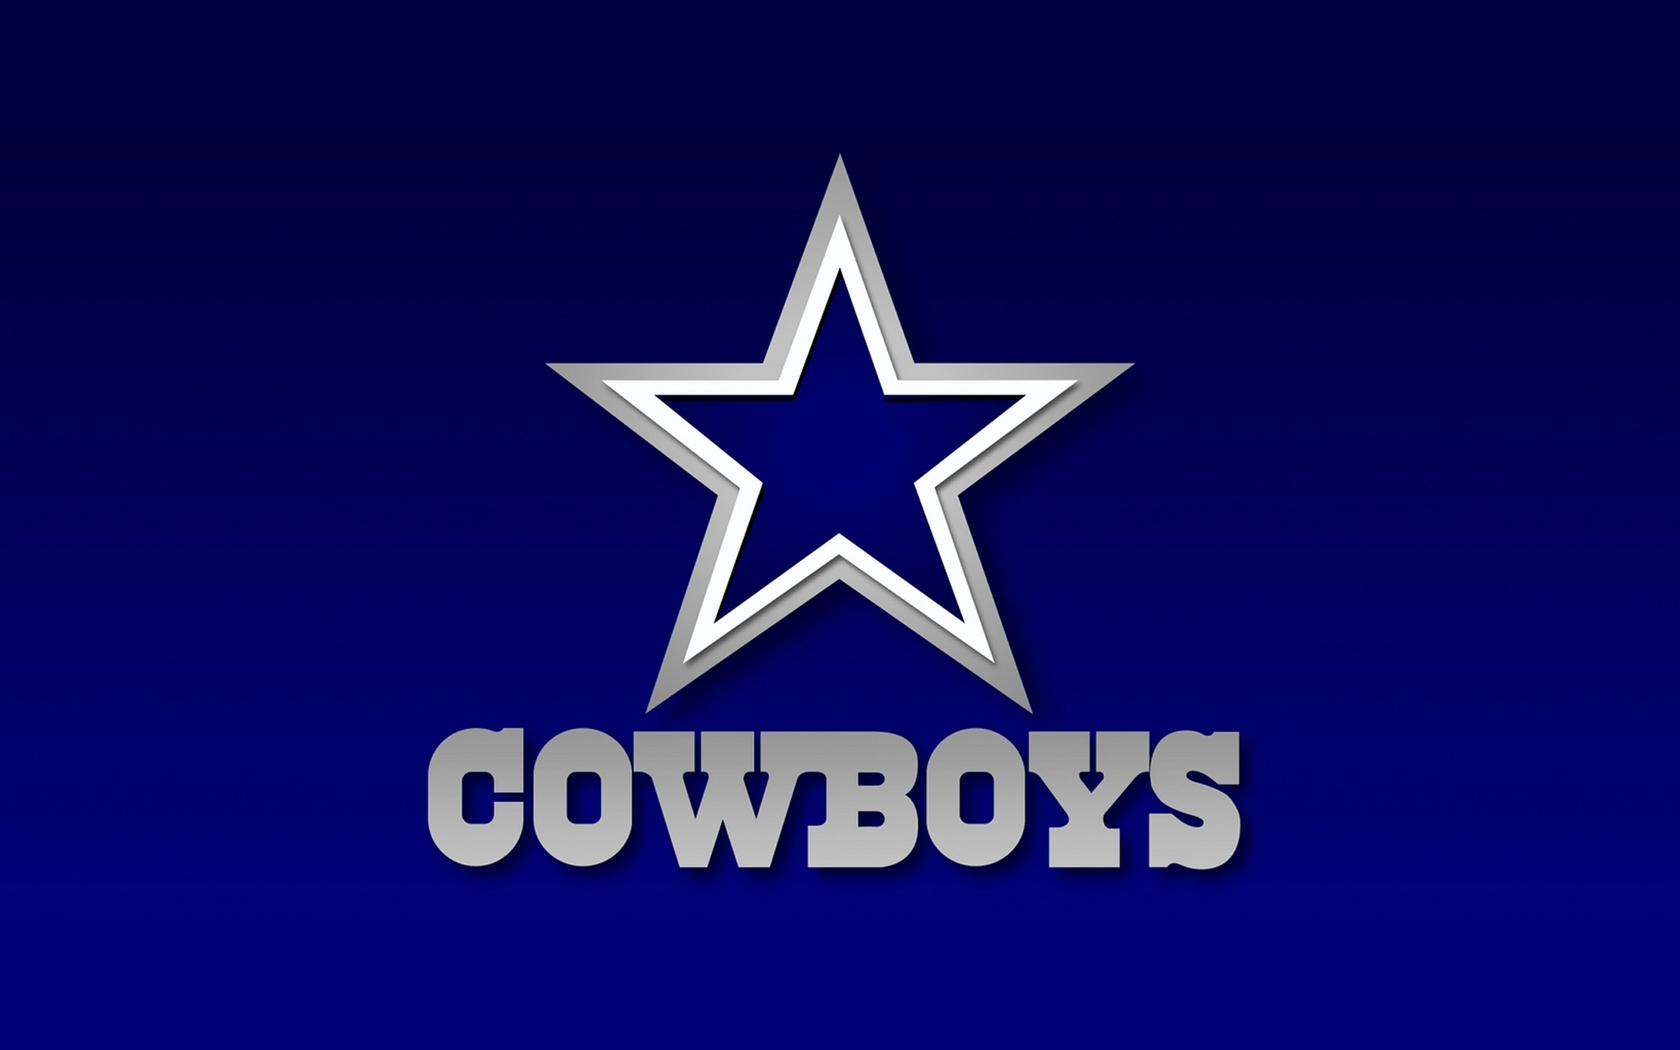 Free Dallas Cowboys background image Dallas Cowboys wallpapers